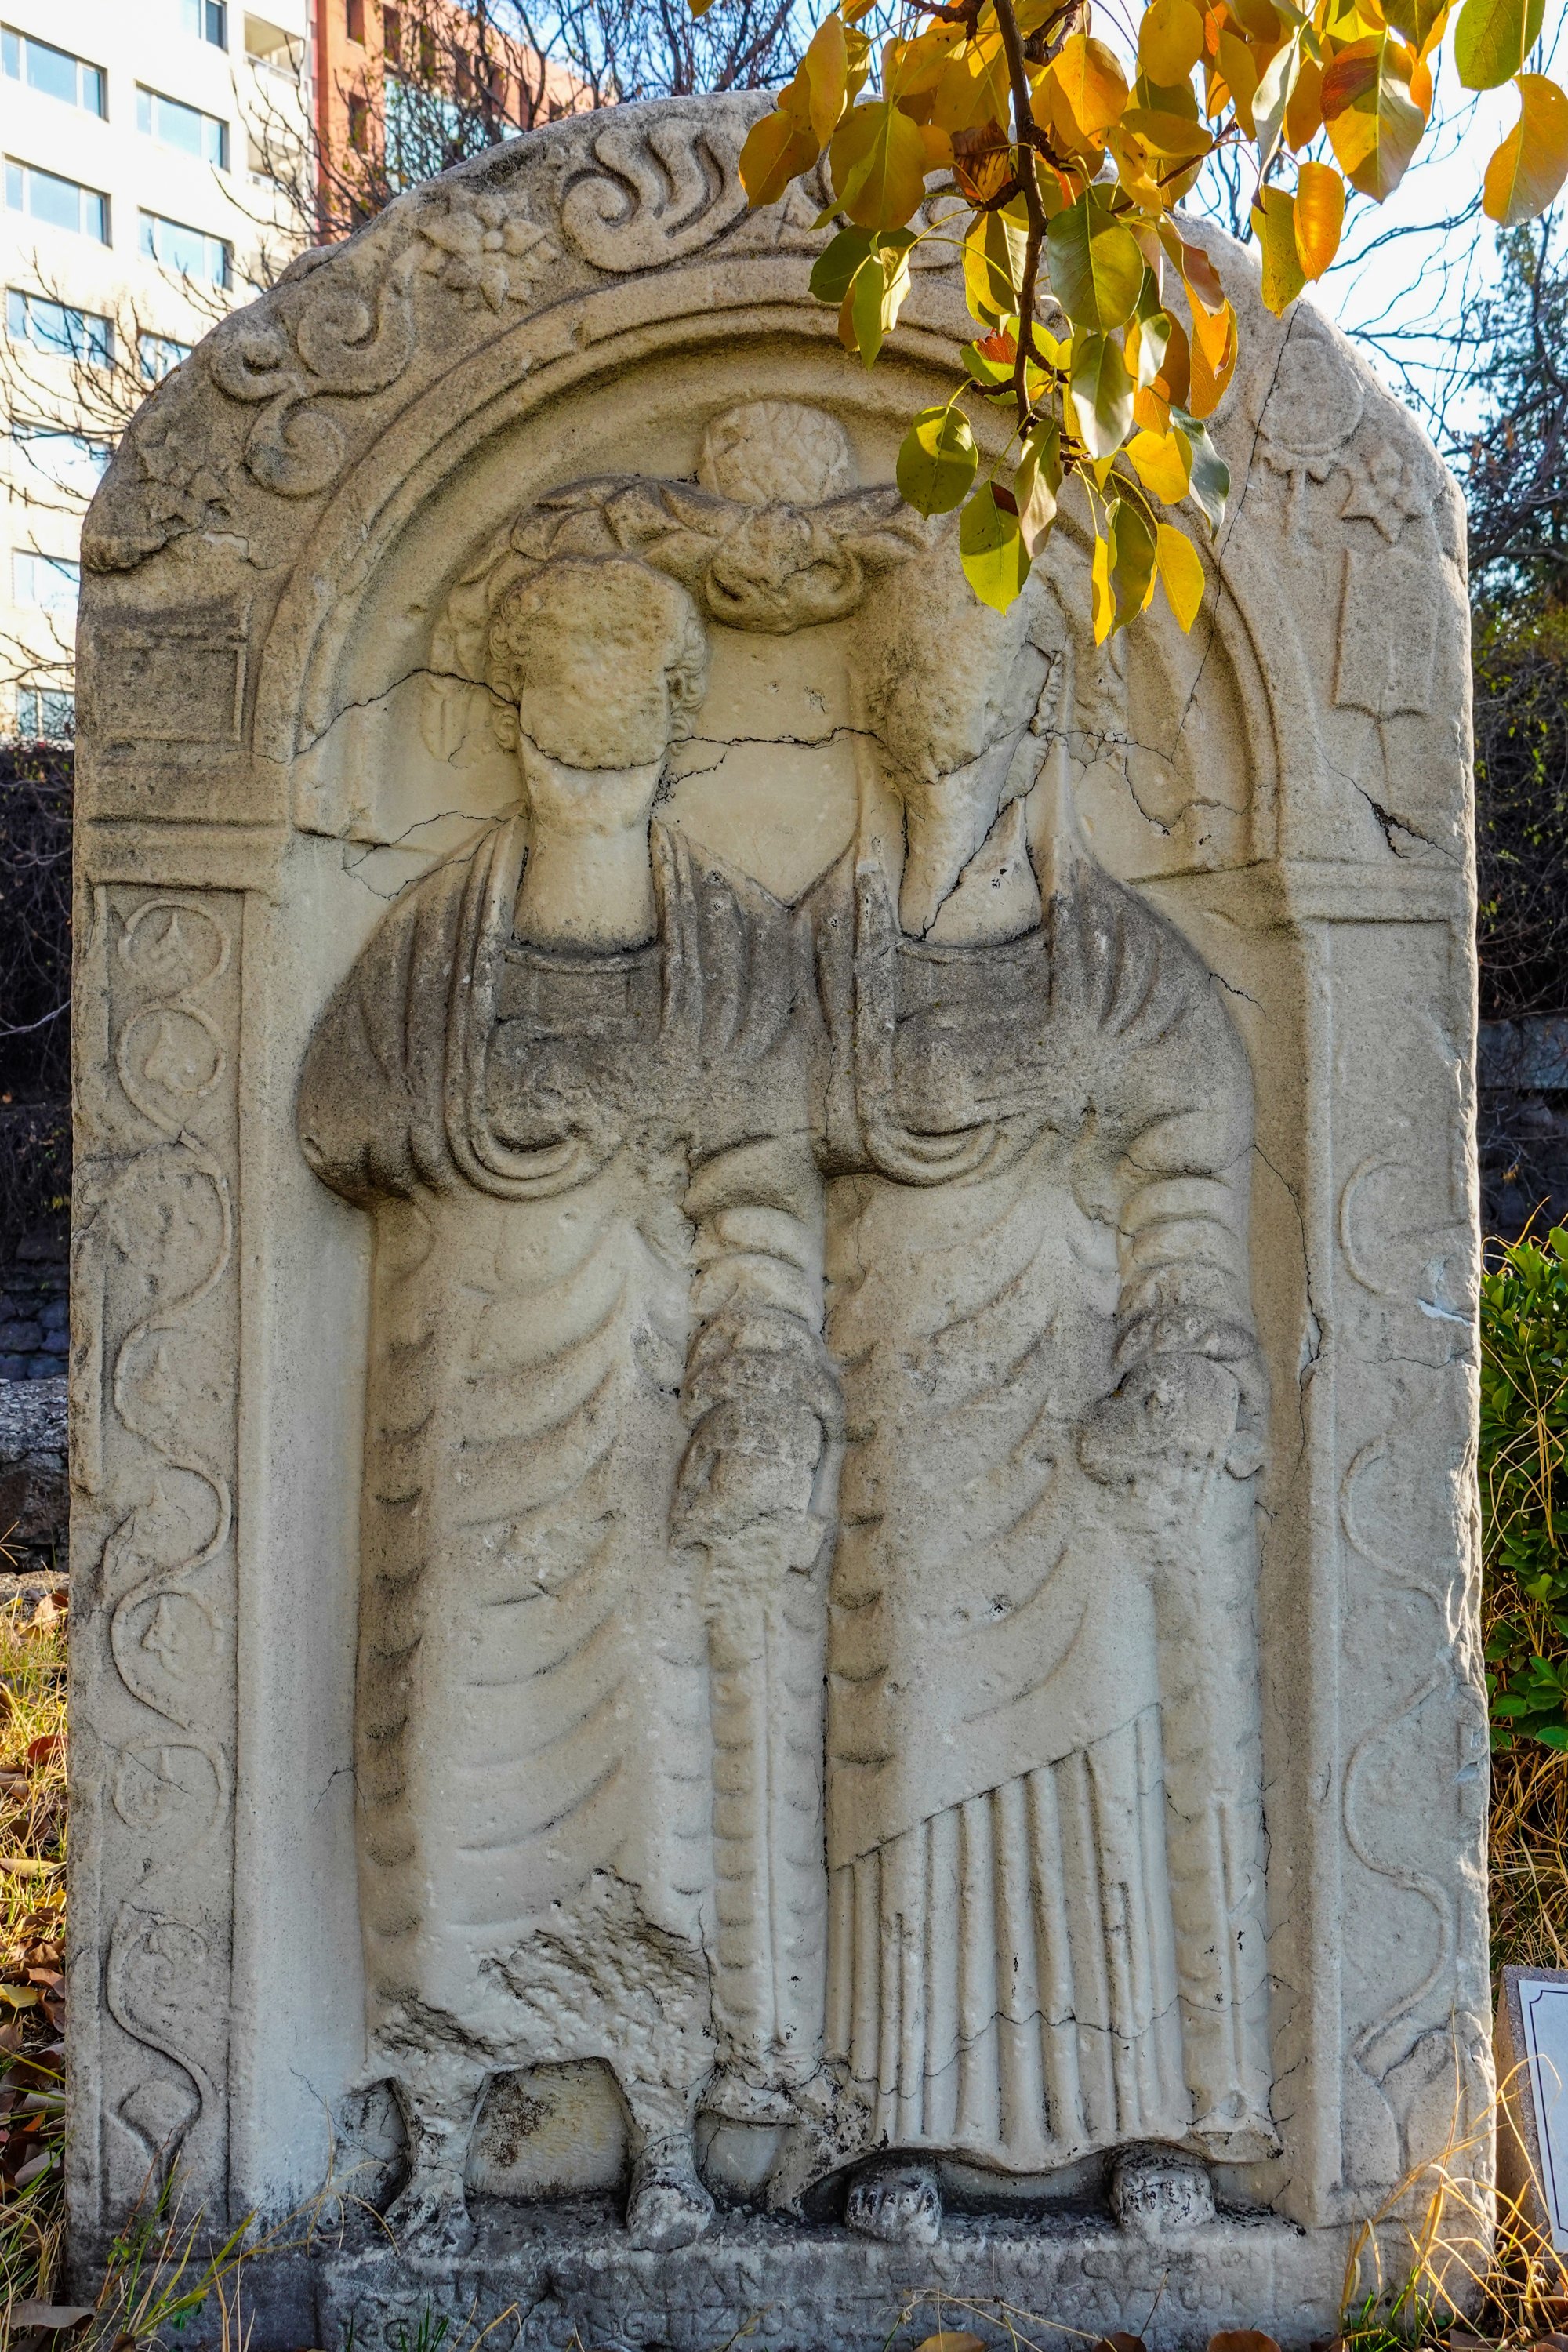 A grave stele at the Roman Bath. (Photo by Argun Konuk)